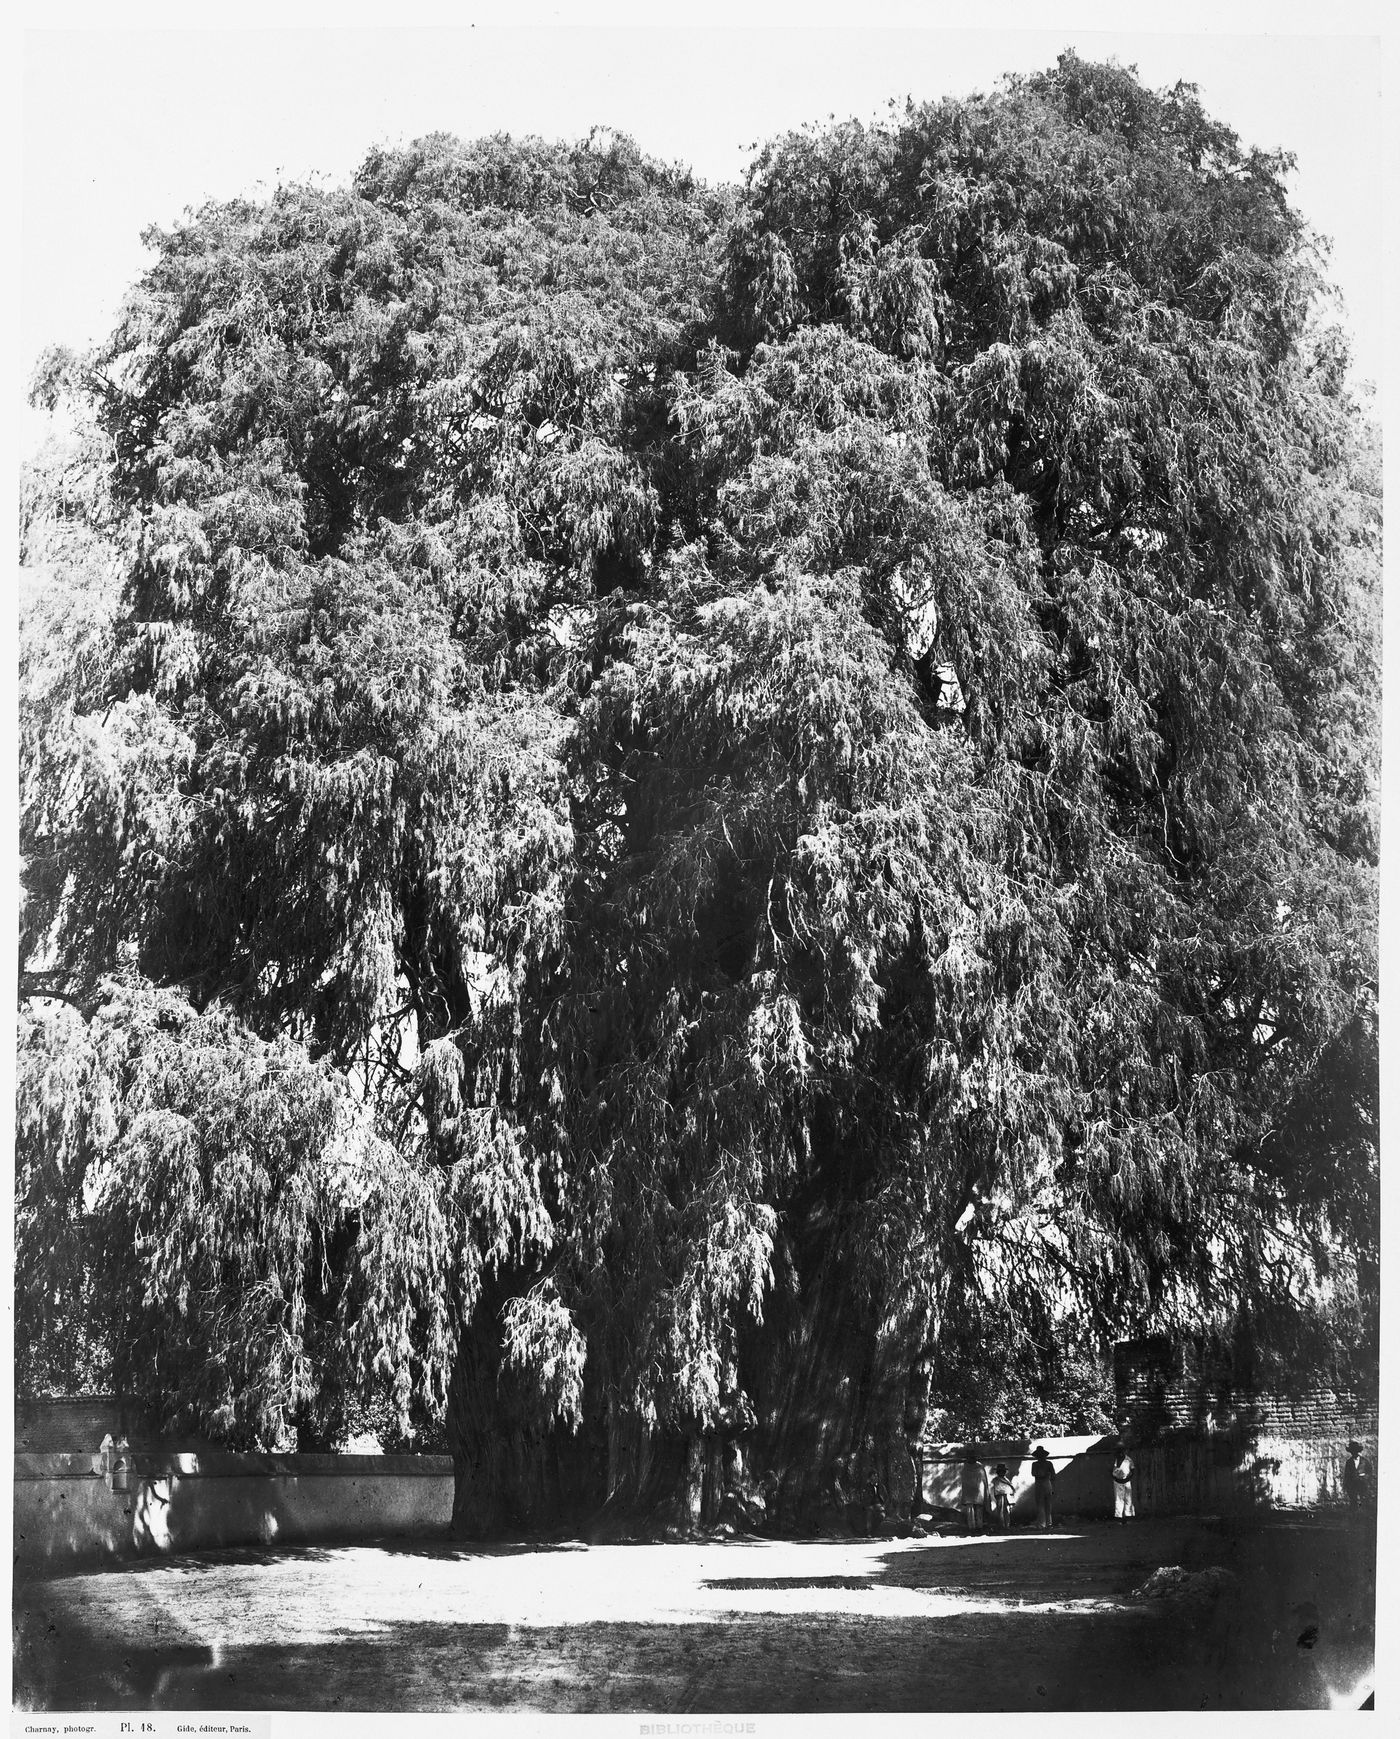 View of the Arbol del Tule [tree of Tule] located in the town churchyard, Santa María del Tule, Mexico